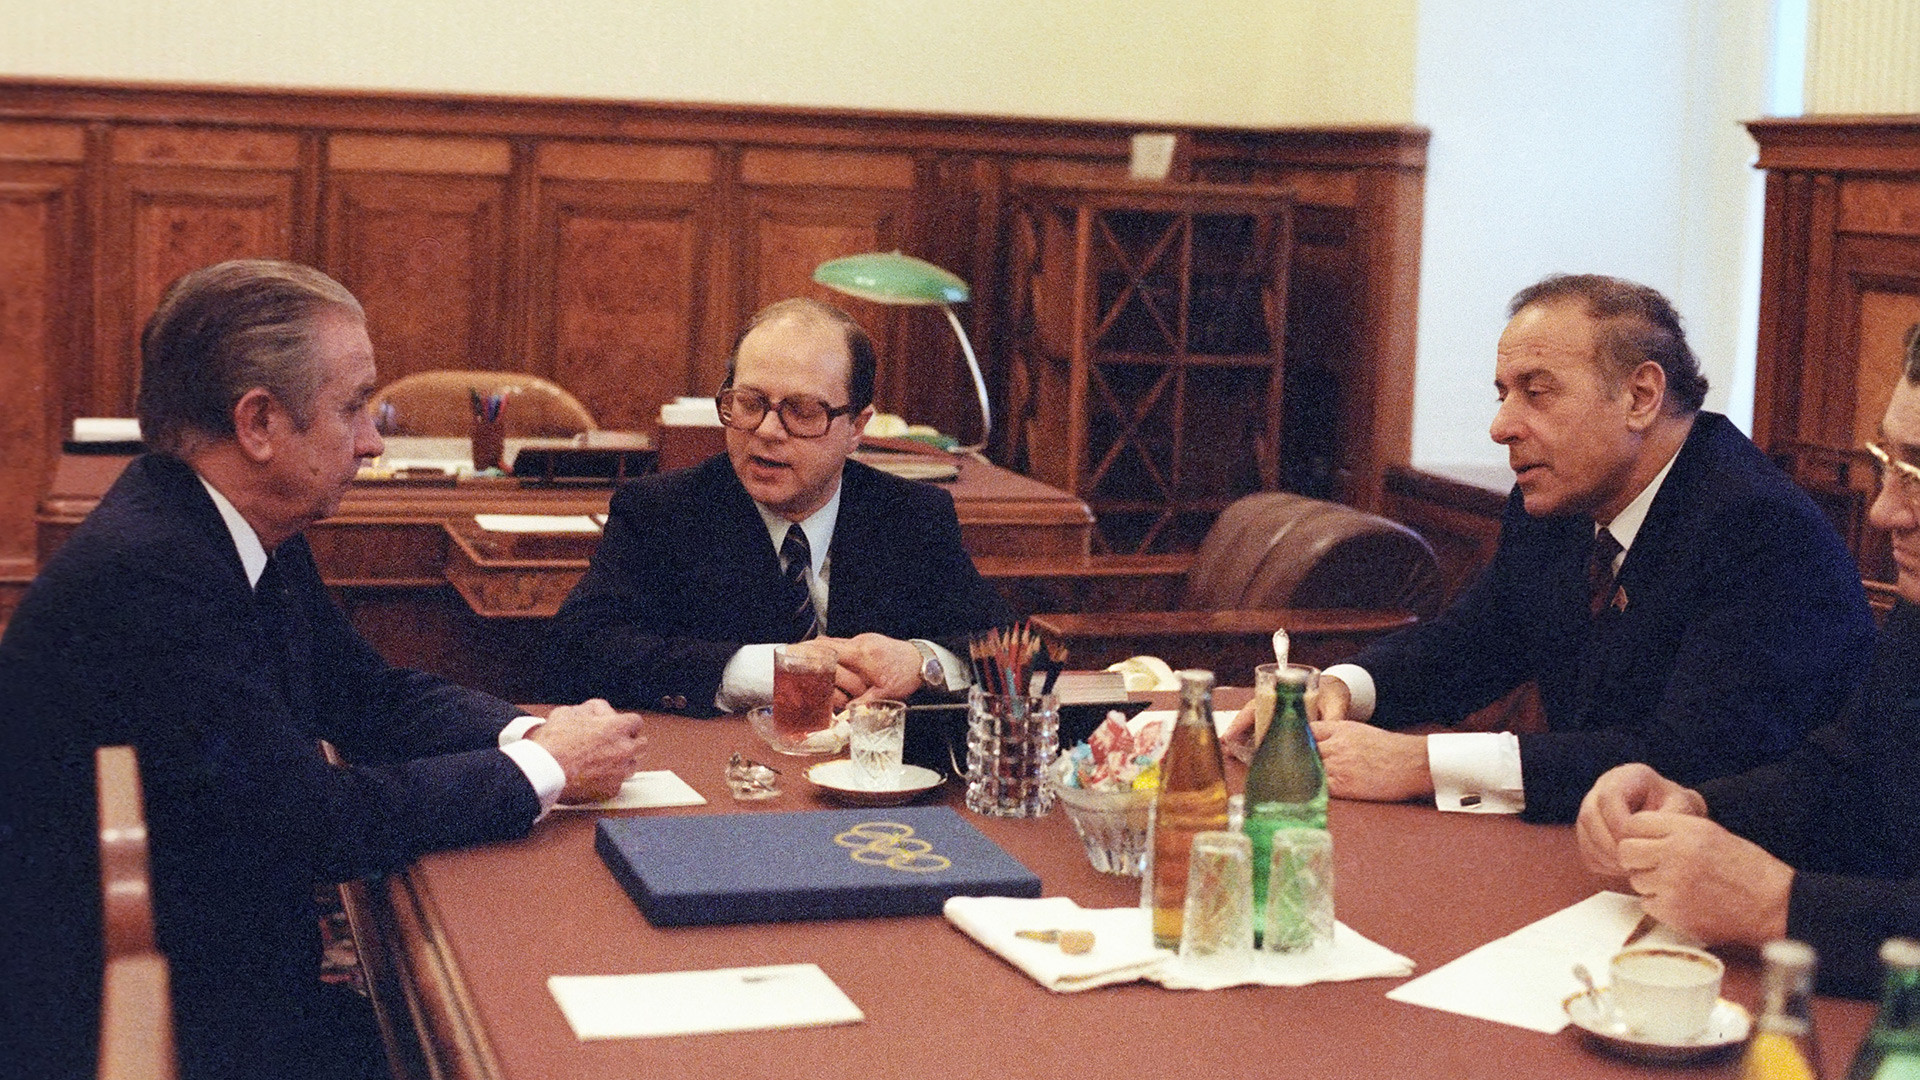 ヘイダル・アリエフソ連政府（閣僚会議）第一副首相（右側）とフアン・アントニオ・サマランチIOC会長（左側）